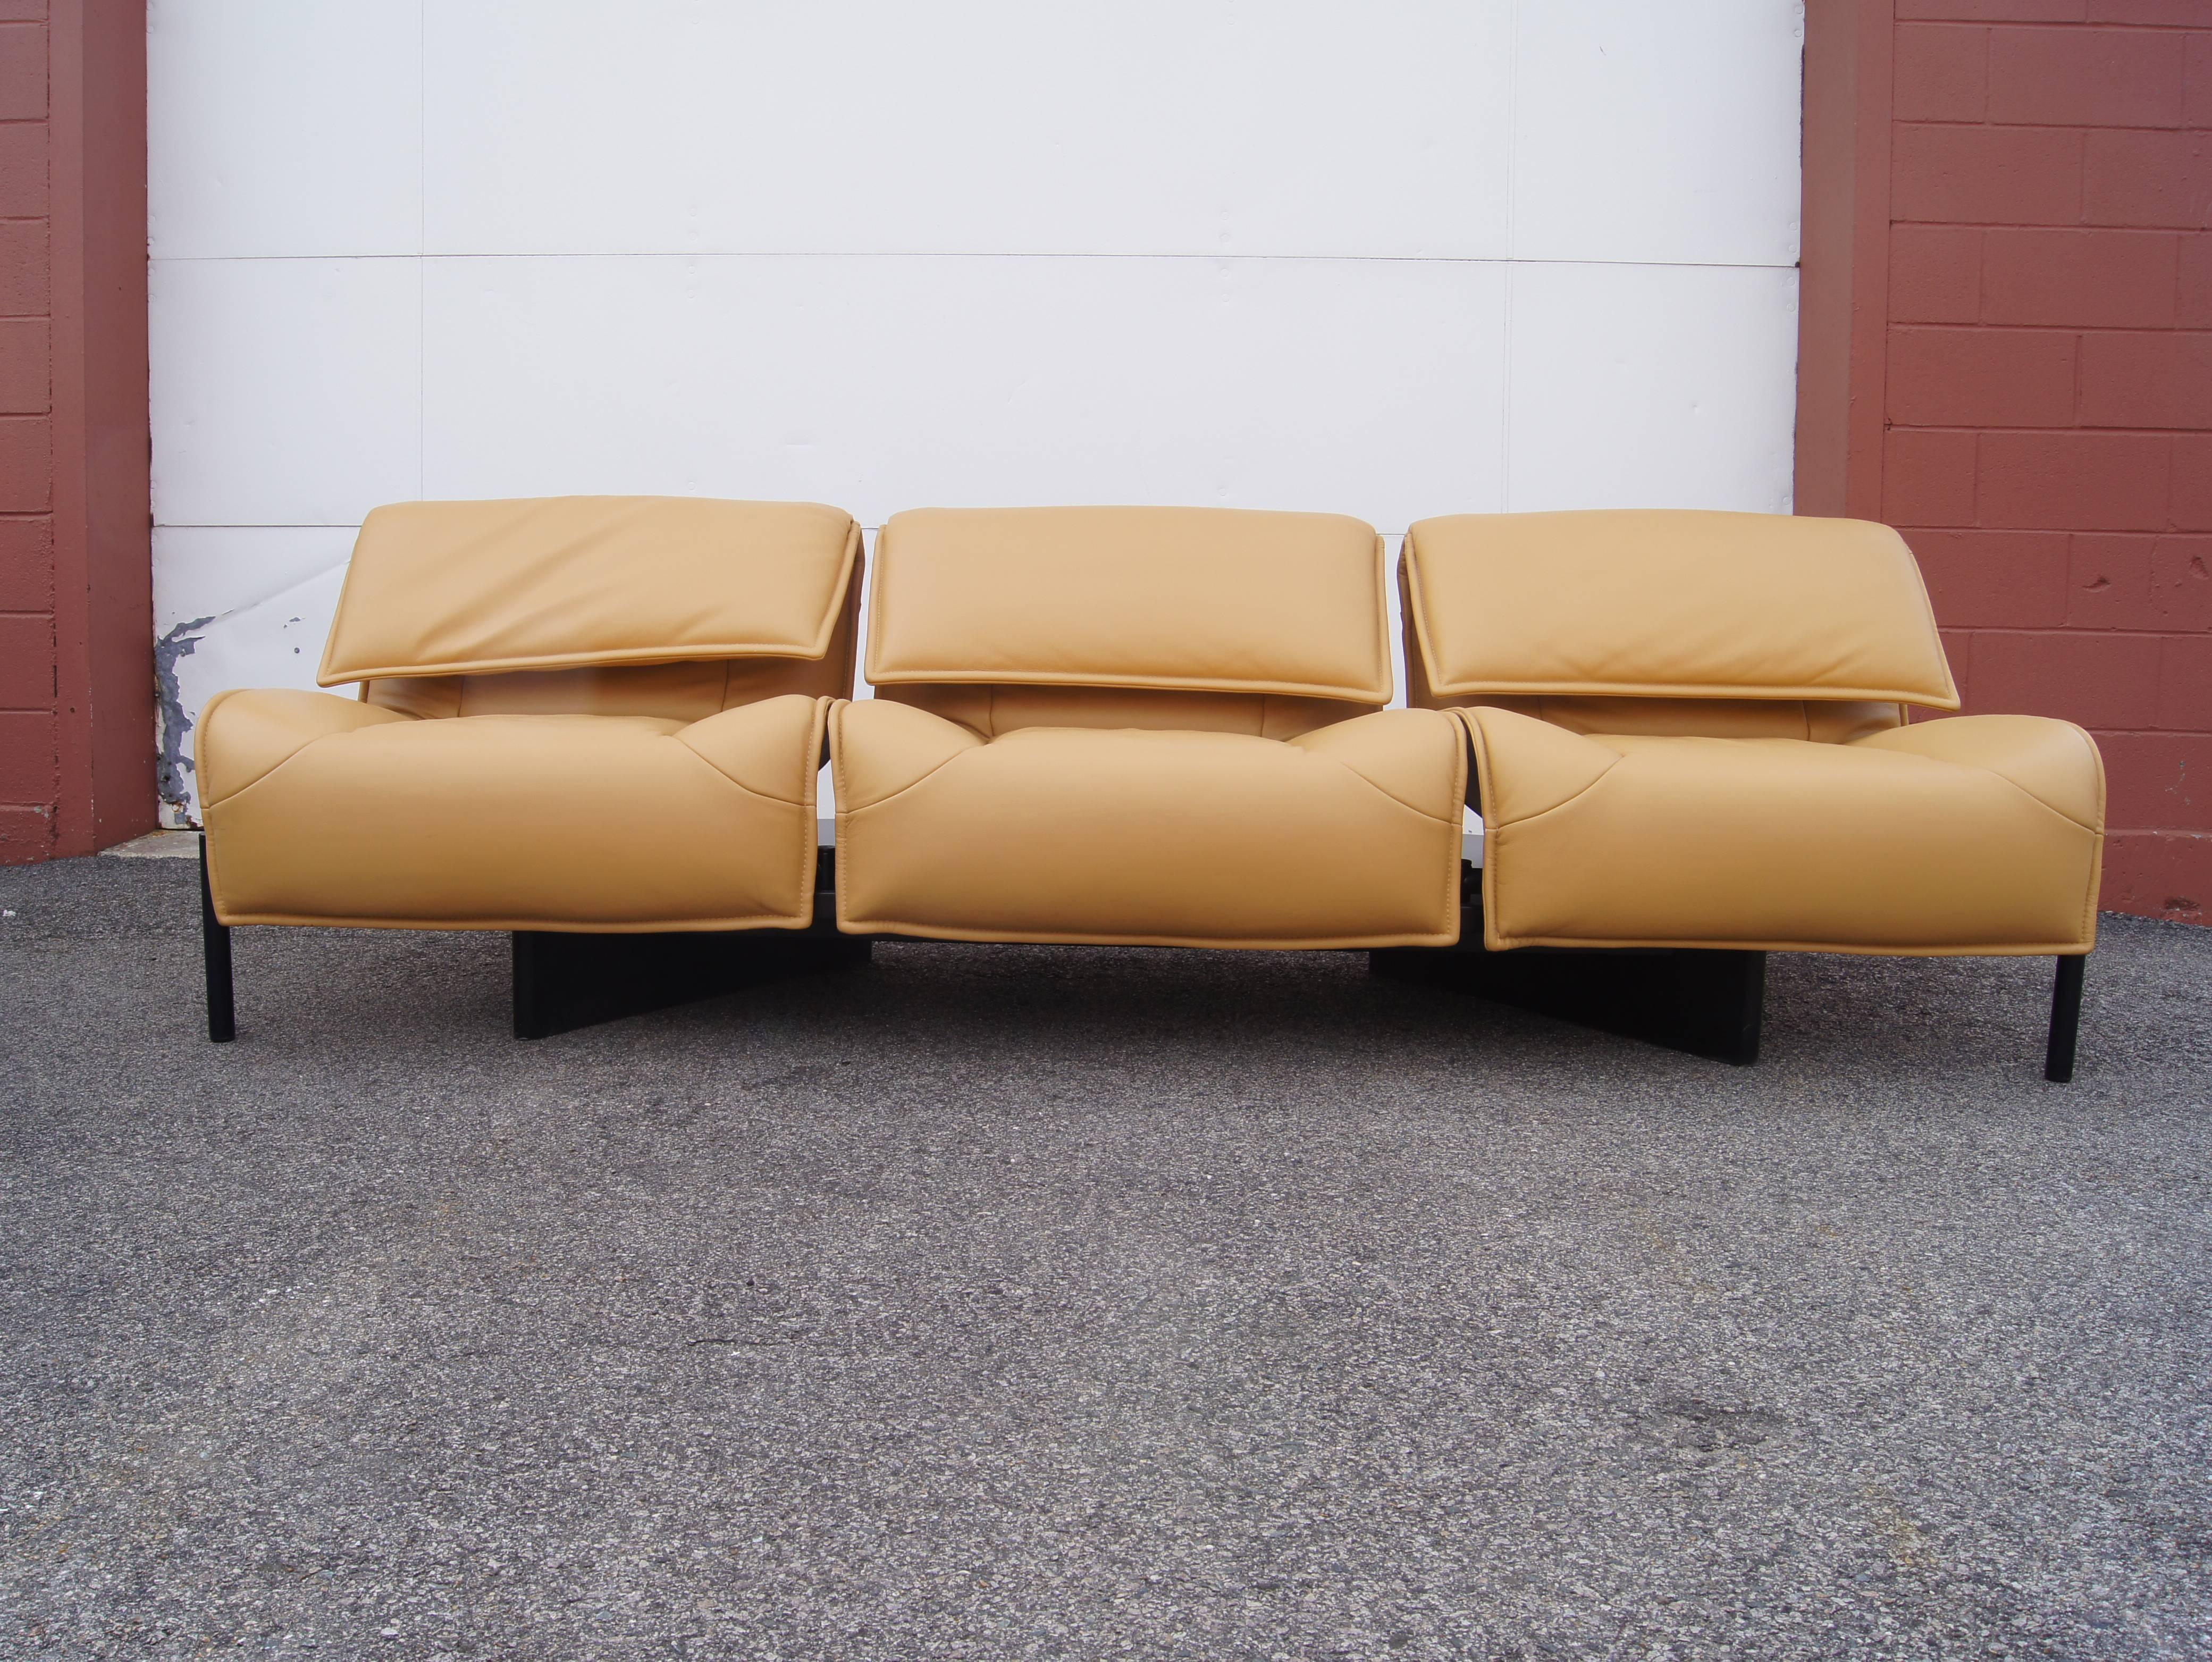 Late 20th Century Leather Veranda 3 Sofa by Vico Magistretti for Cassina